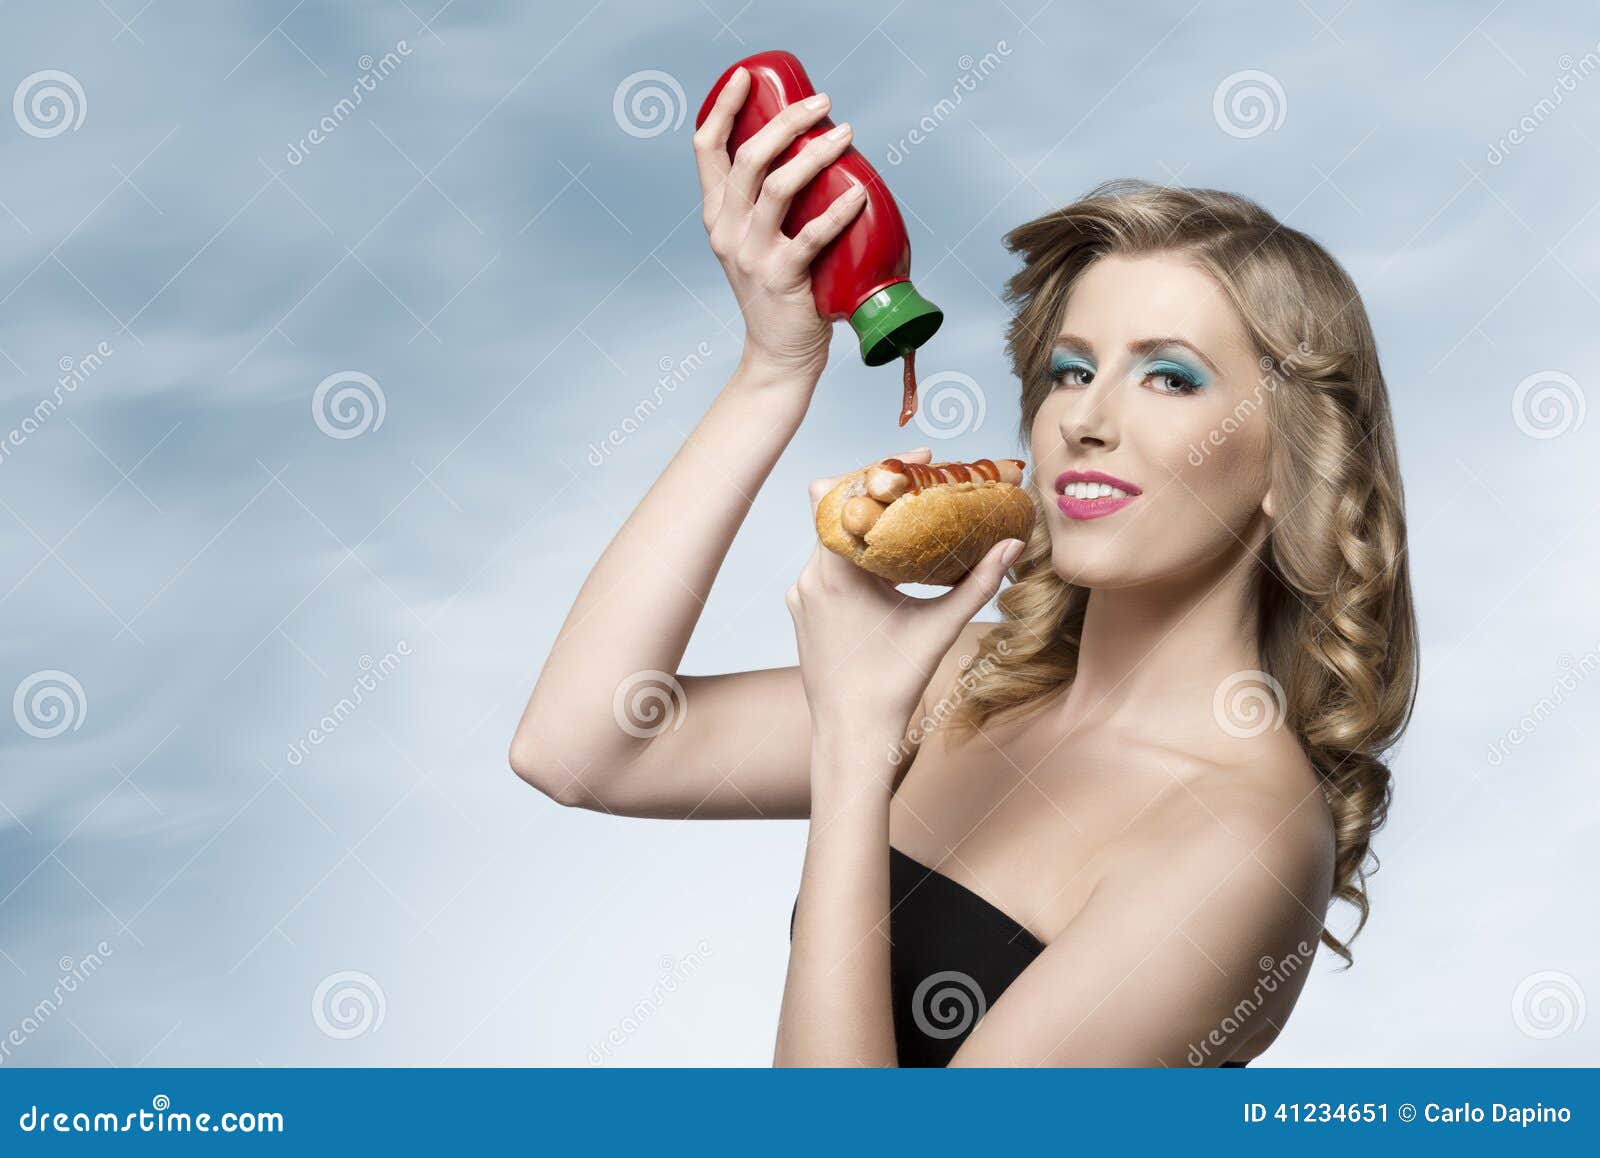 Vrouw Met Ketchup En Hotdog Stock Afbeelding - Image Of Mensen, Kaukasisch:  41234651